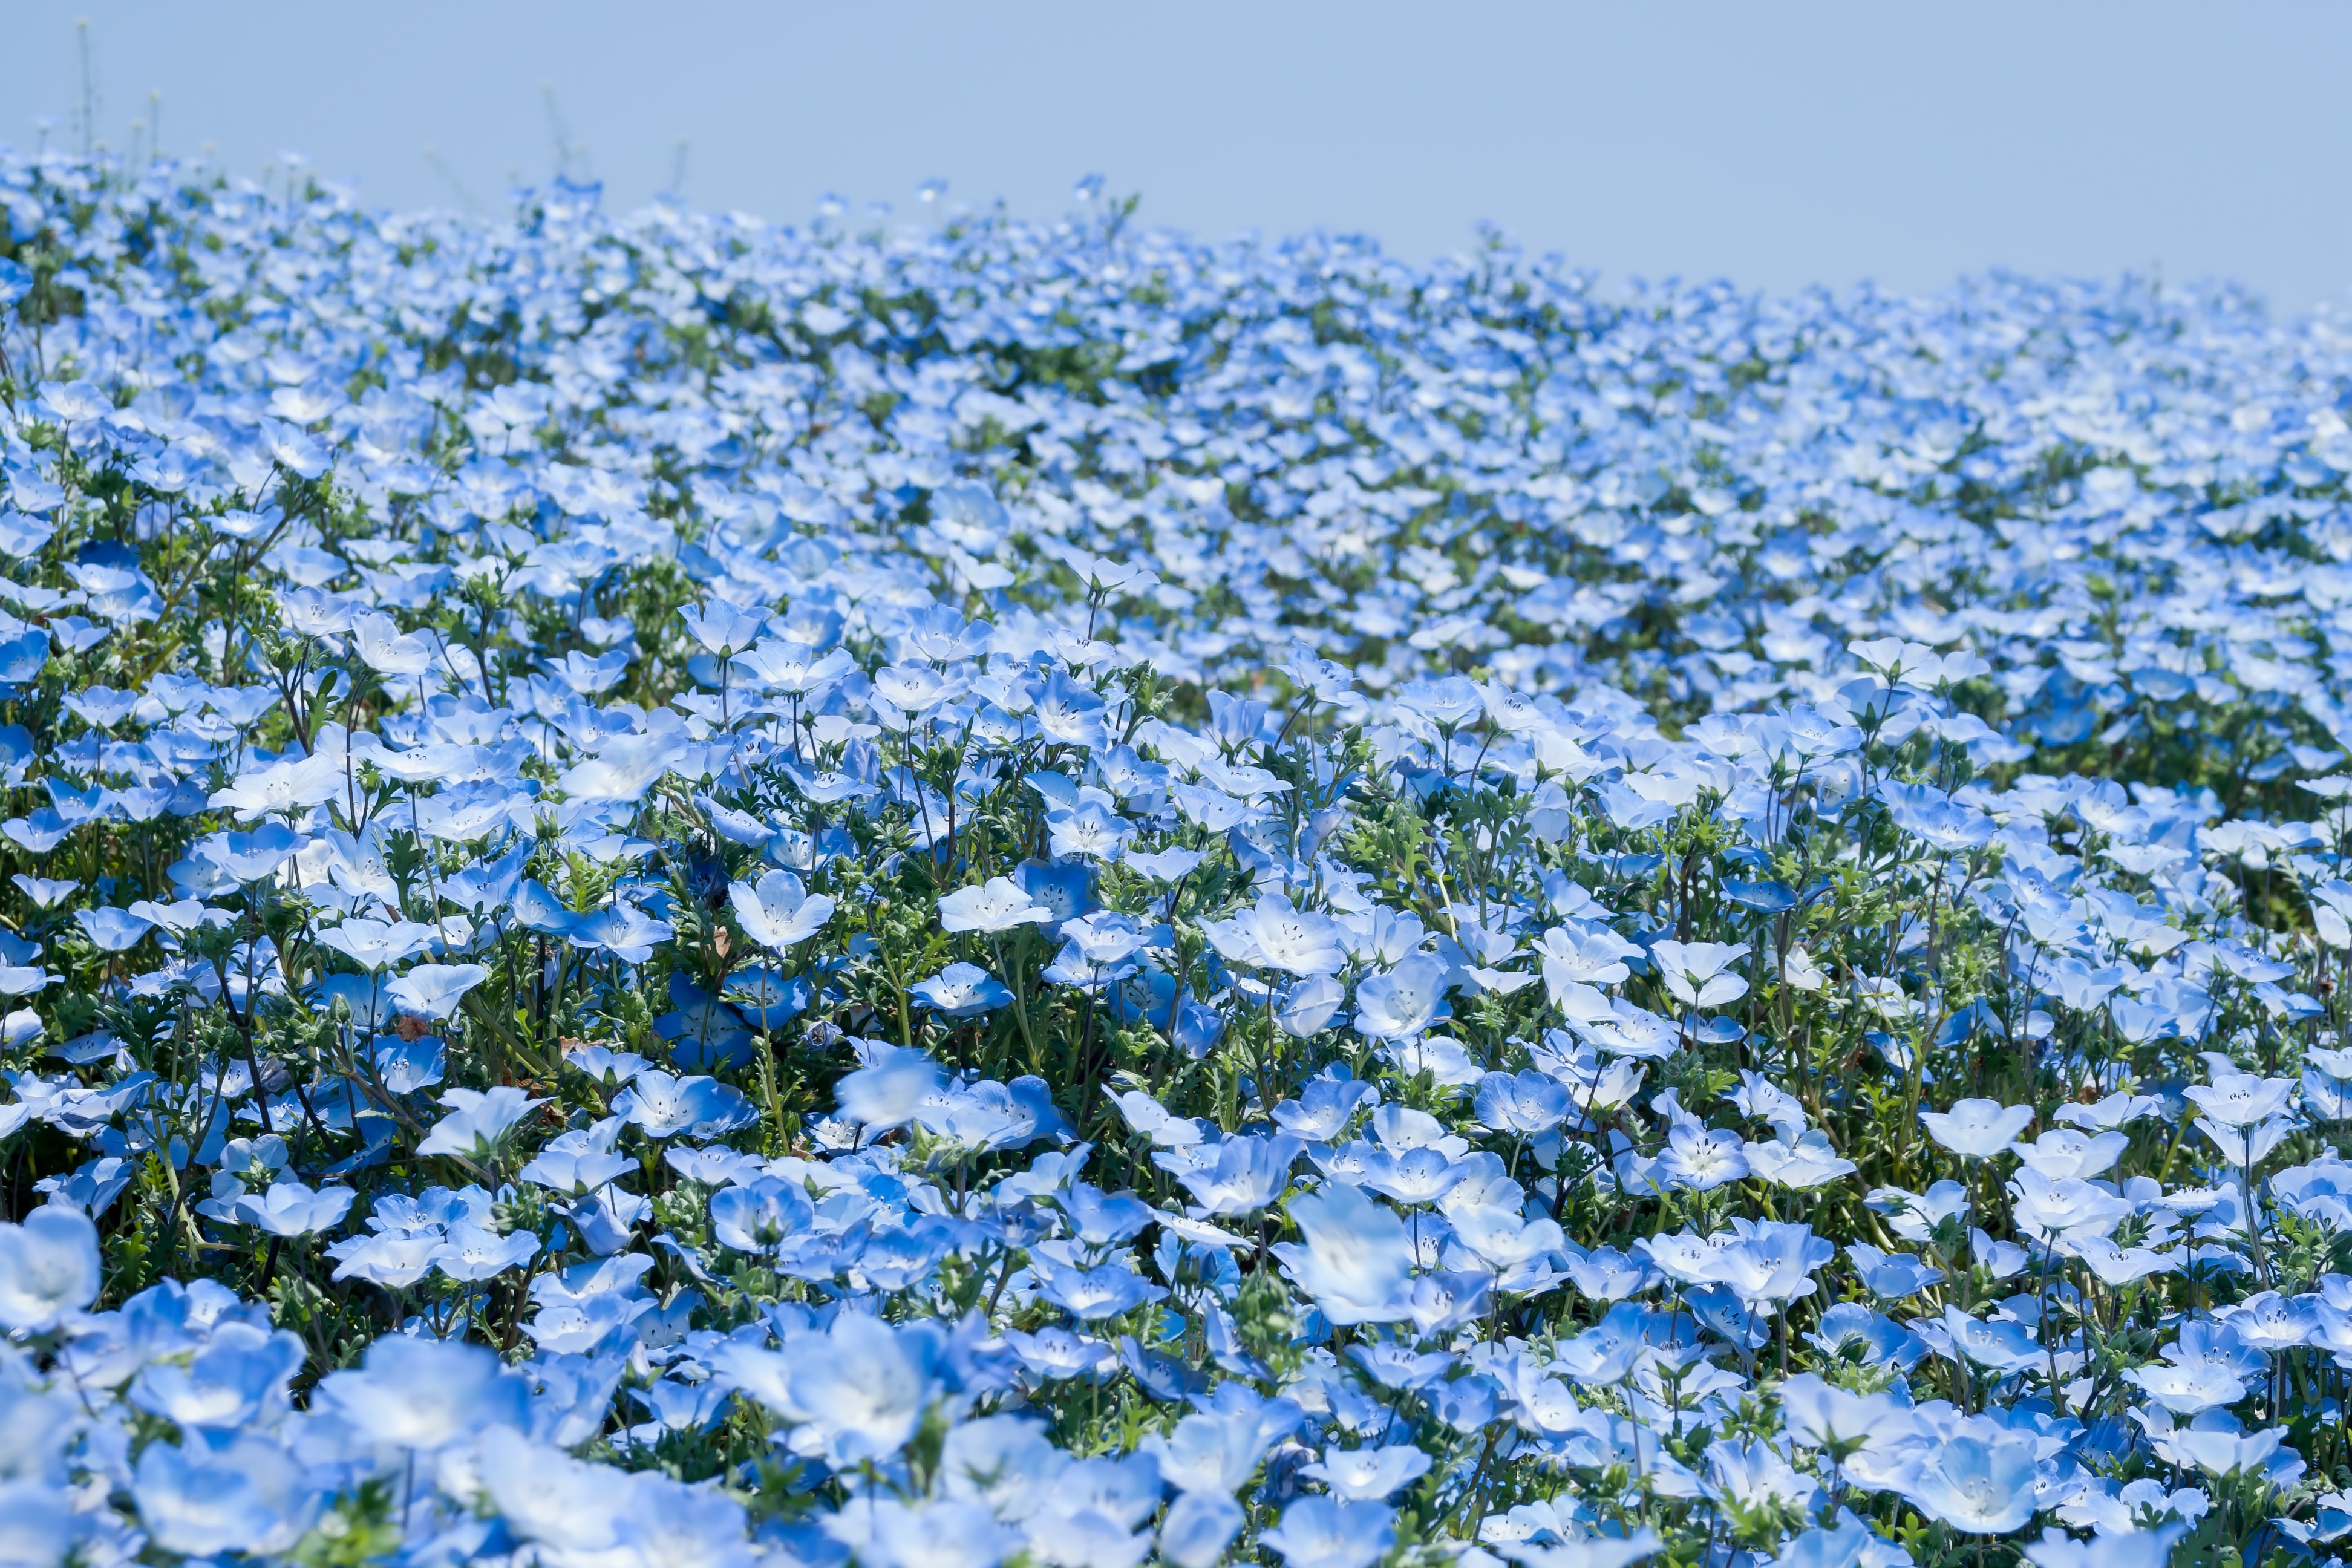 広がる一面の青い花の写真を無料ダウンロード フリー素材 ぱくたそ